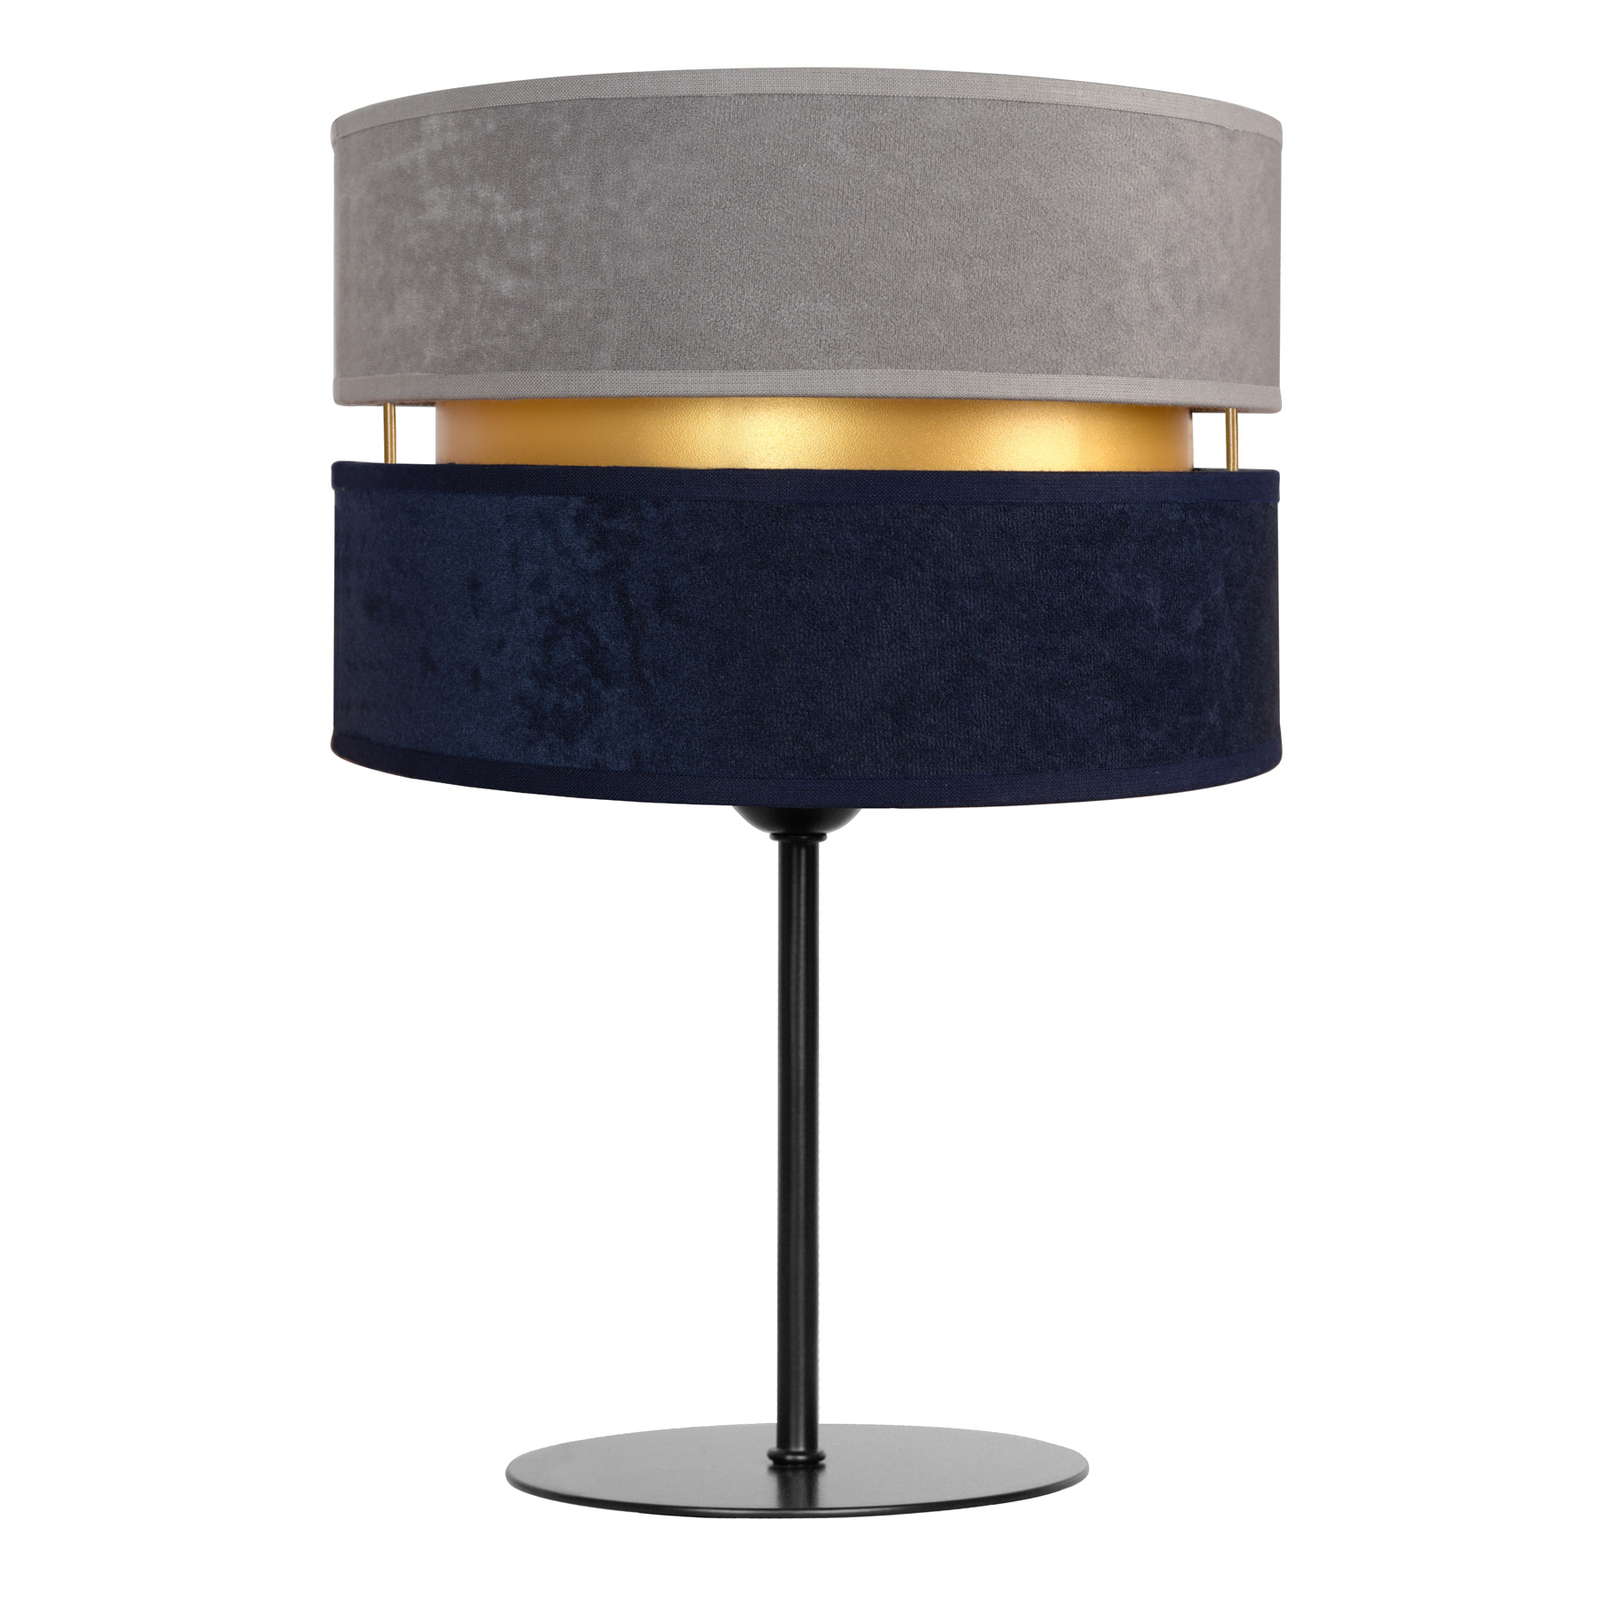 Lampa stołowa Duo, granatowa/szara/złota, 30cm